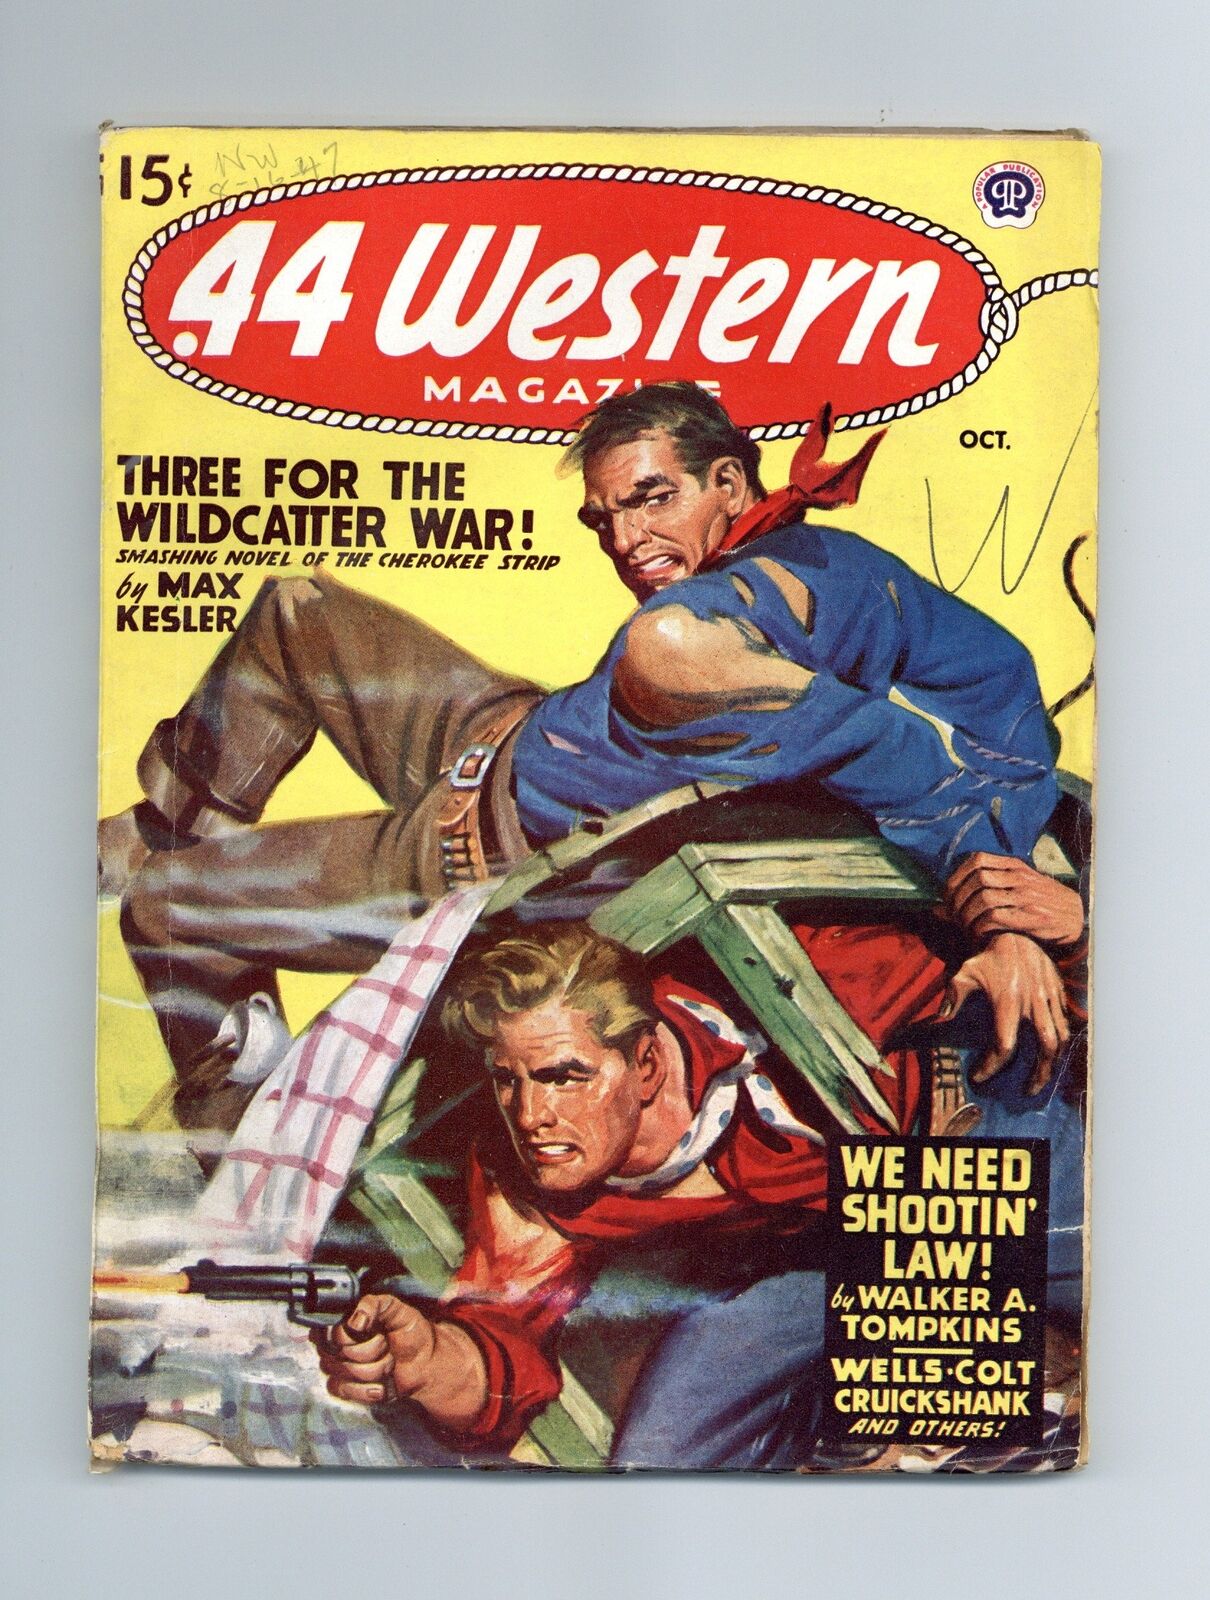 44 Western Magazine Pulp Oct 1947 Vol. 18 #4 VG/FN 5.0